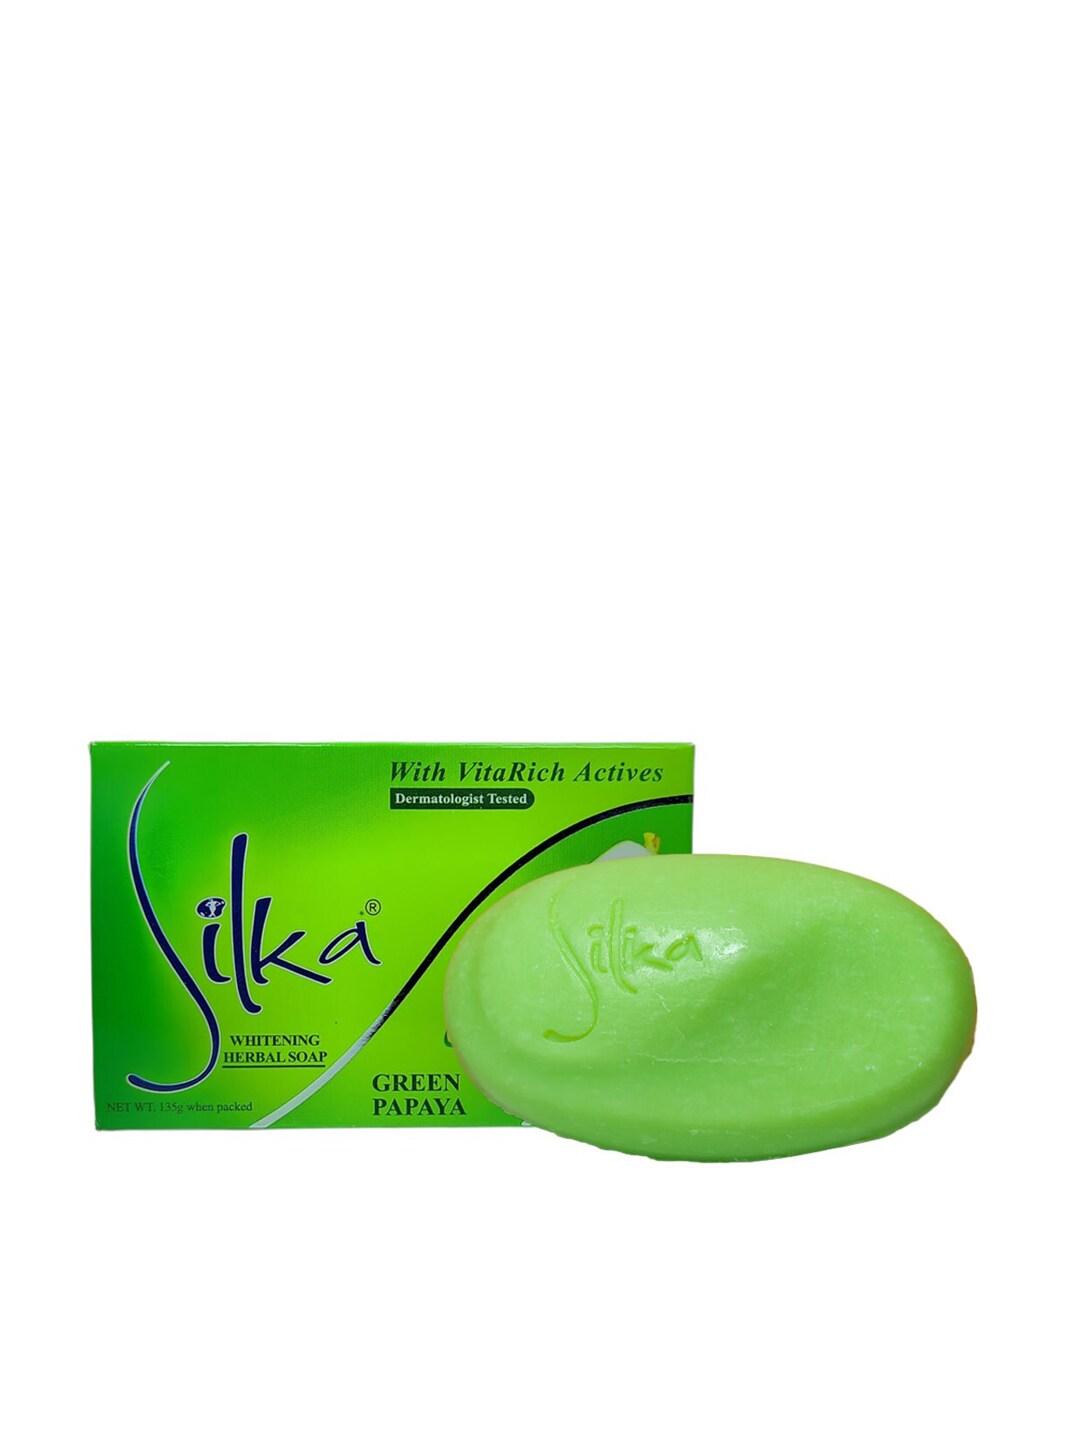 Silka Green Papaya Whitening Herbal Soap